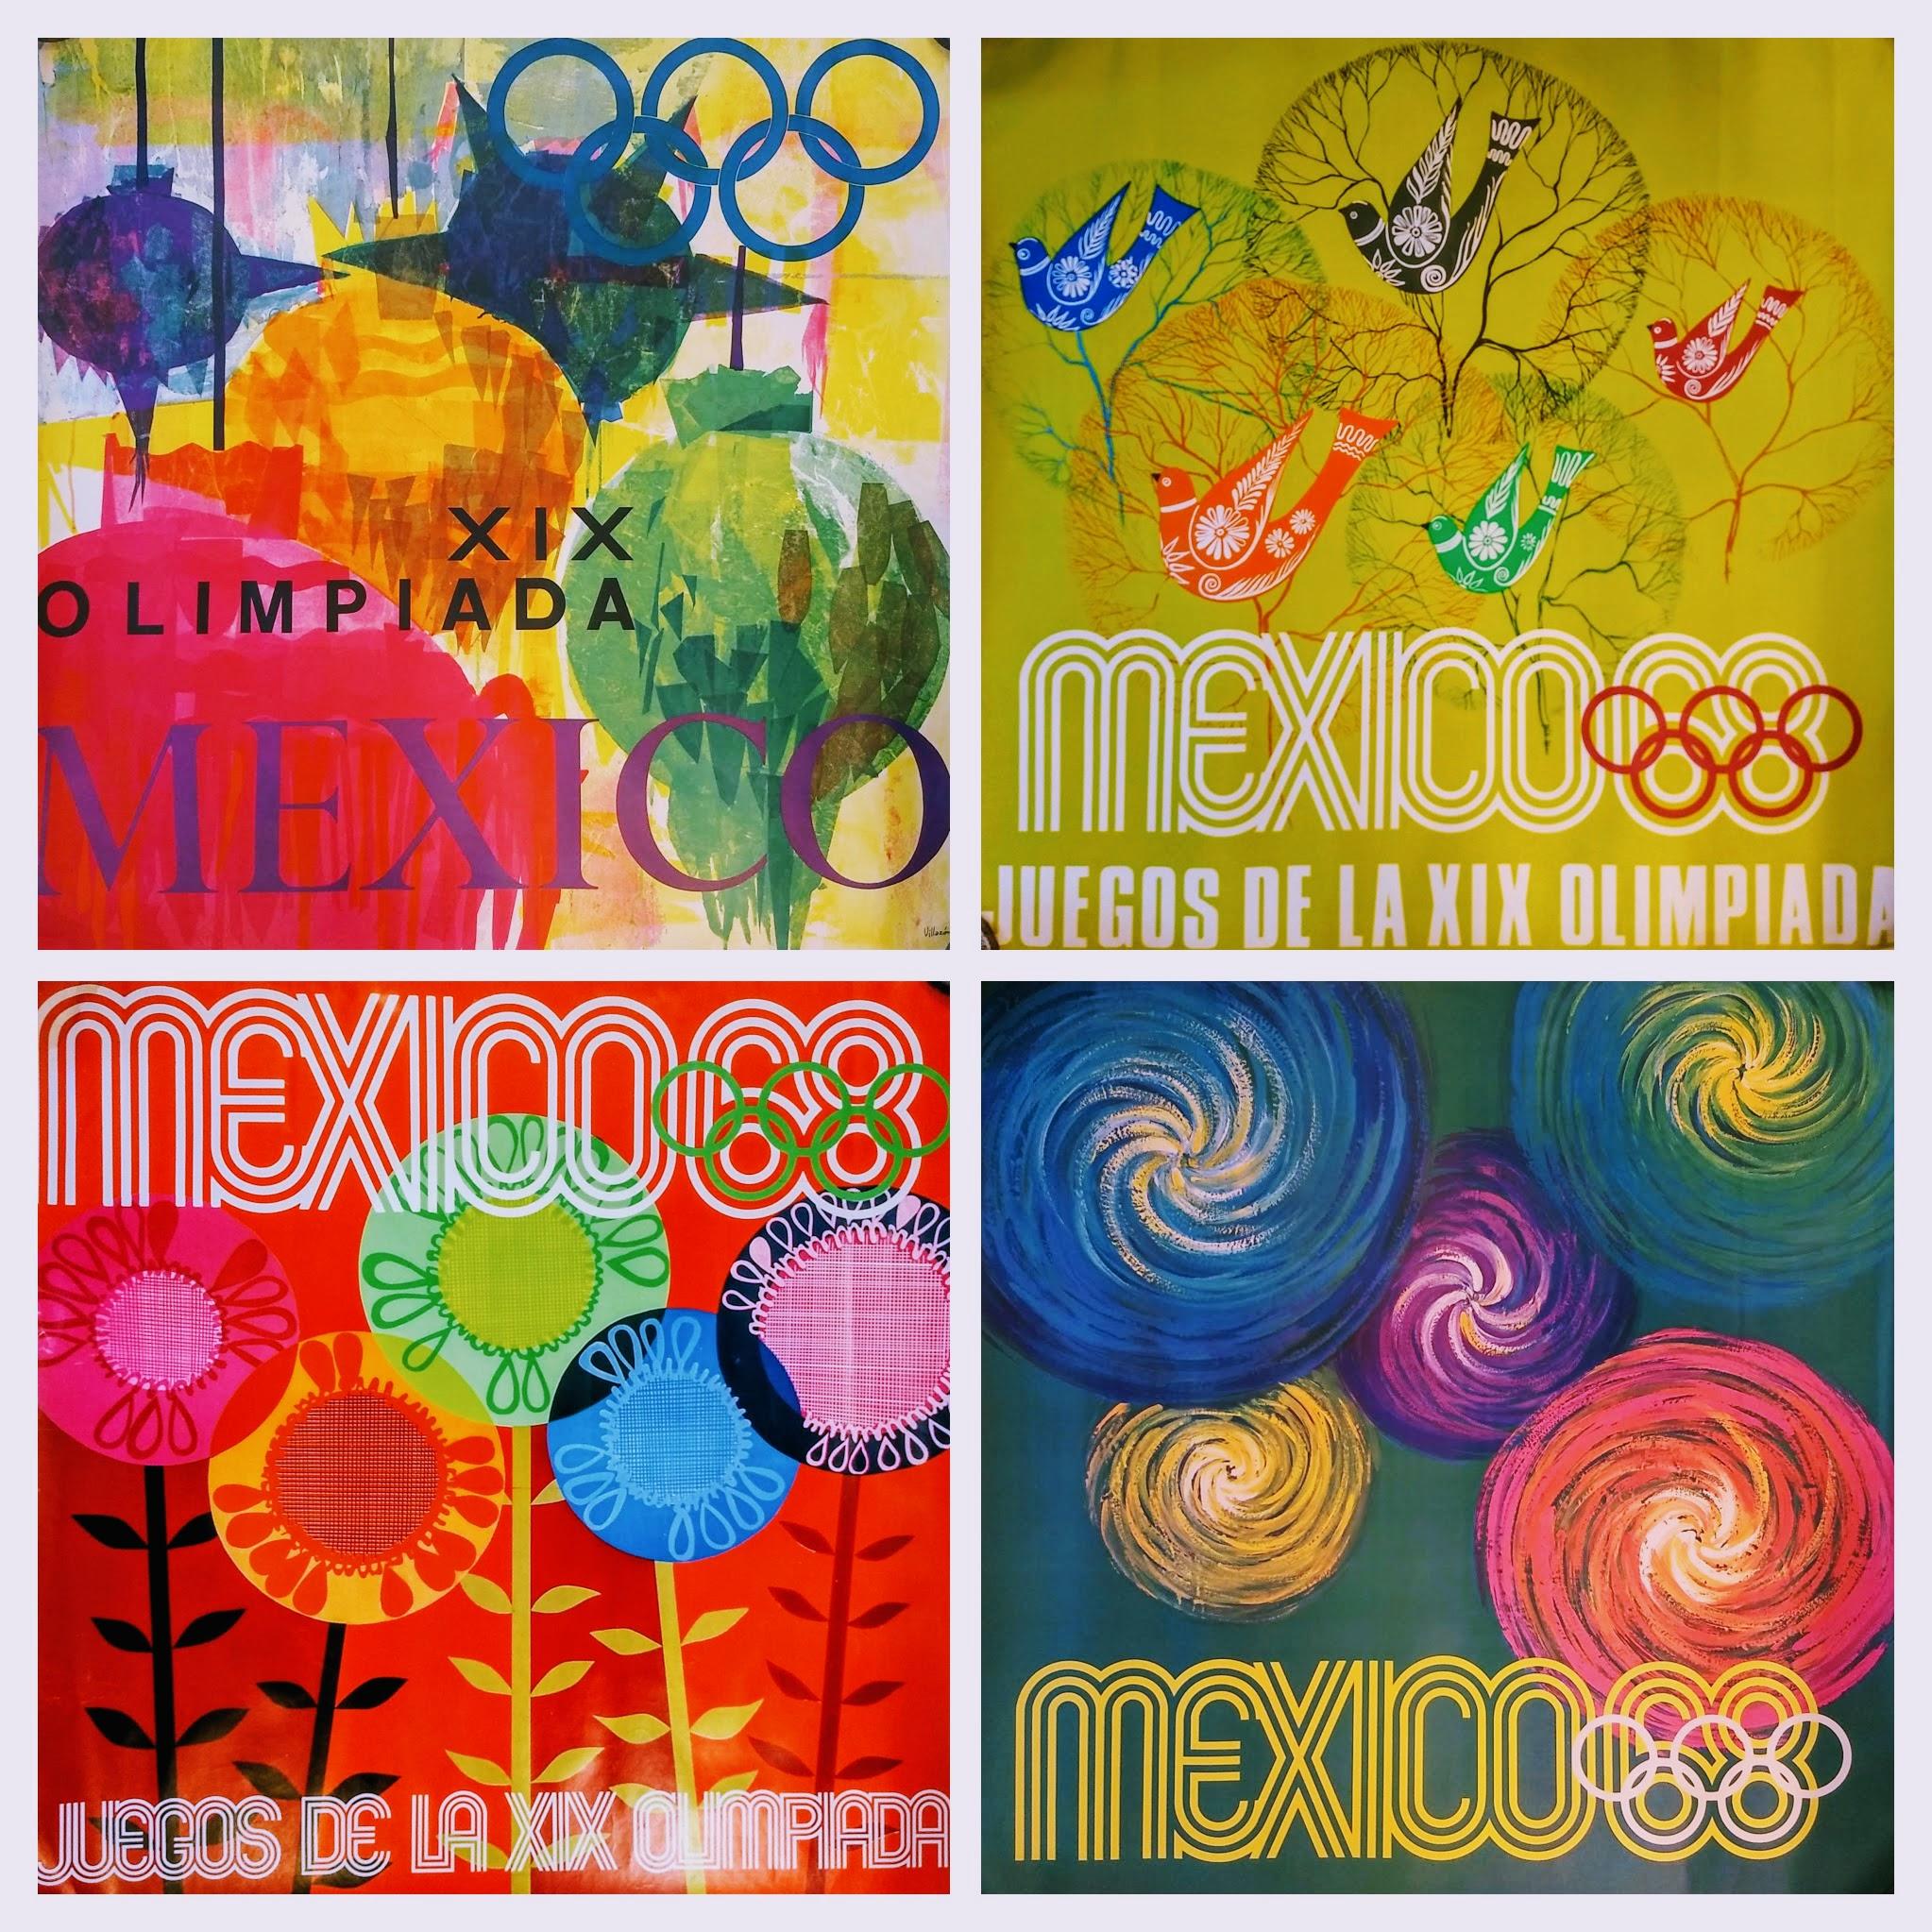 Auffällige Original-Großplakate, gedruckt für die Werbung für den Tourismus zu den Olympischen Spielen 68 in Mexiko. Jedes Plakat ist einem bestimmten mexikanischen Handwerk oder einer Tradition gewidmet, z. B. 